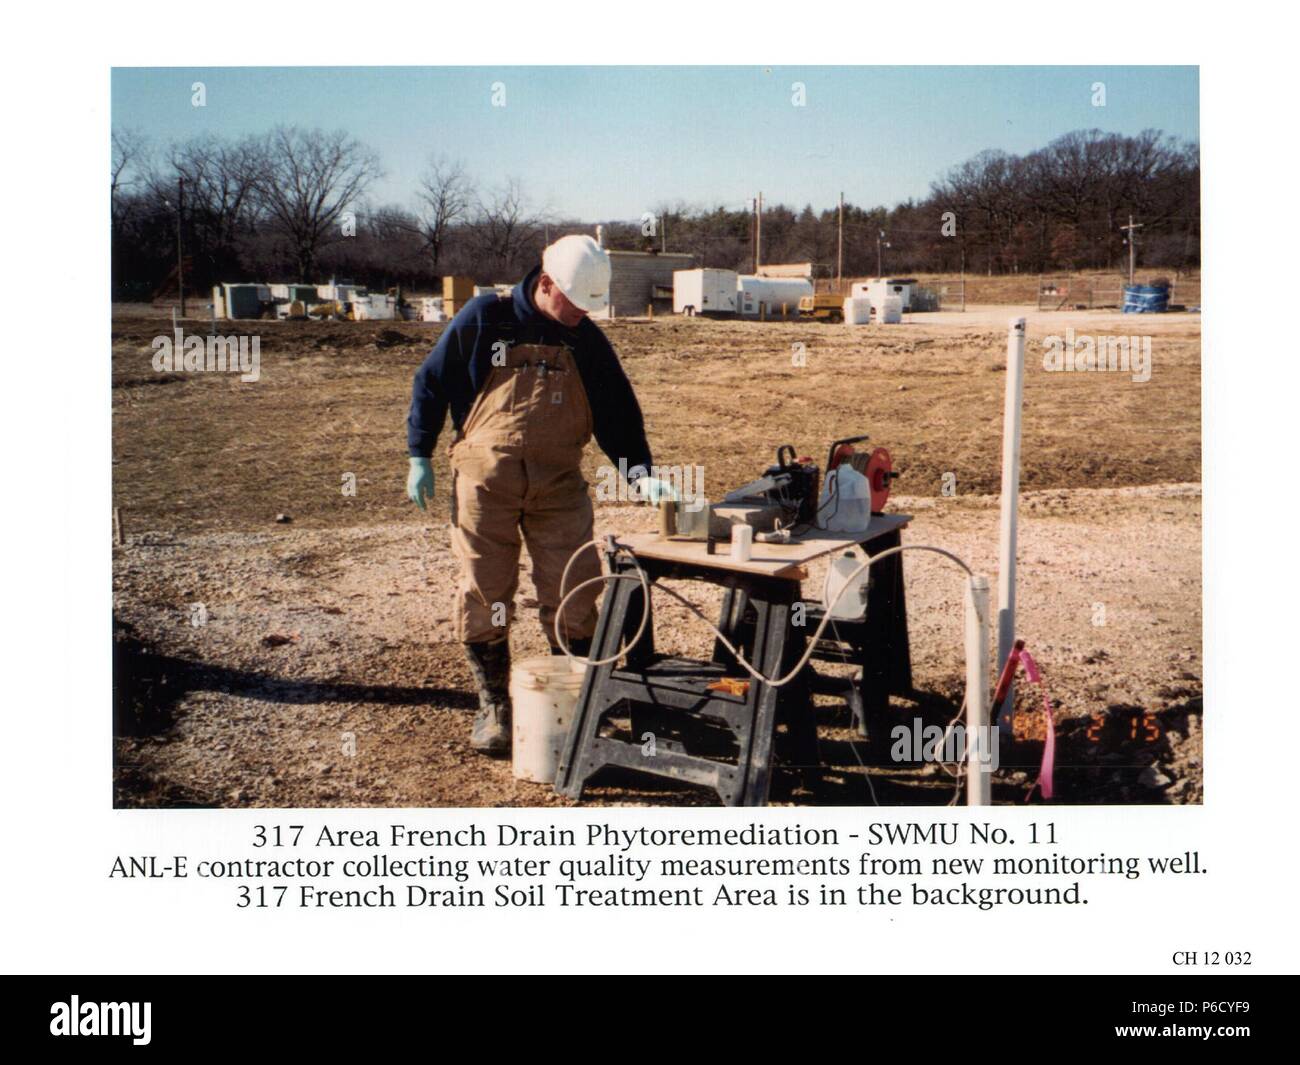 Un contratista que mide la calidad del agua de un pozo de vigilancia a 317 Área de drenaje francés, Illinois, 2016. Imagen cortesía del Departamento de Energía de Estados Unidos. () Foto de stock